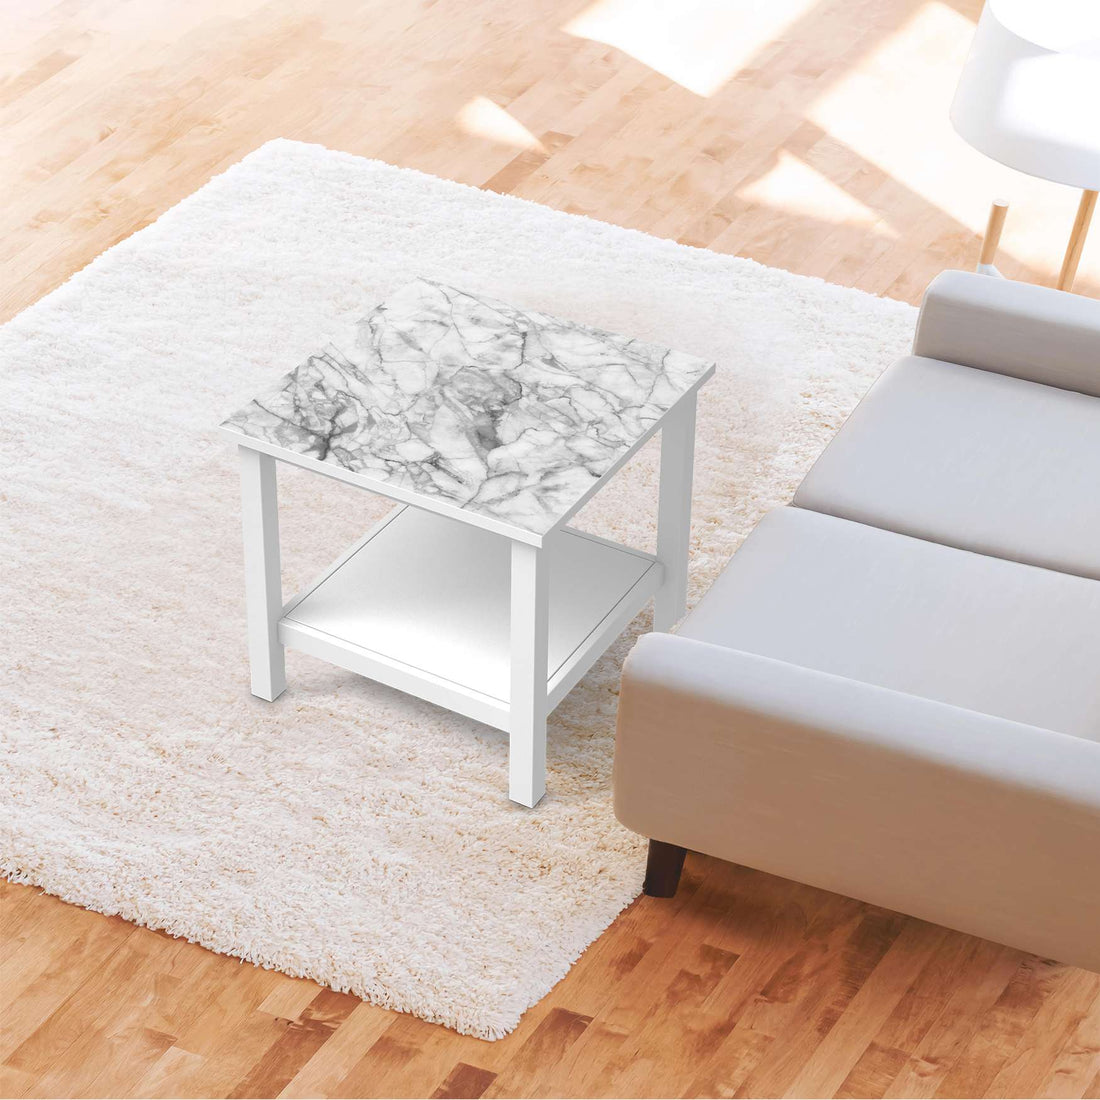 Möbel Klebefolie Marmor weiß - IKEA Hemnes Beistelltisch 55x55 cm - Wohnzimmer